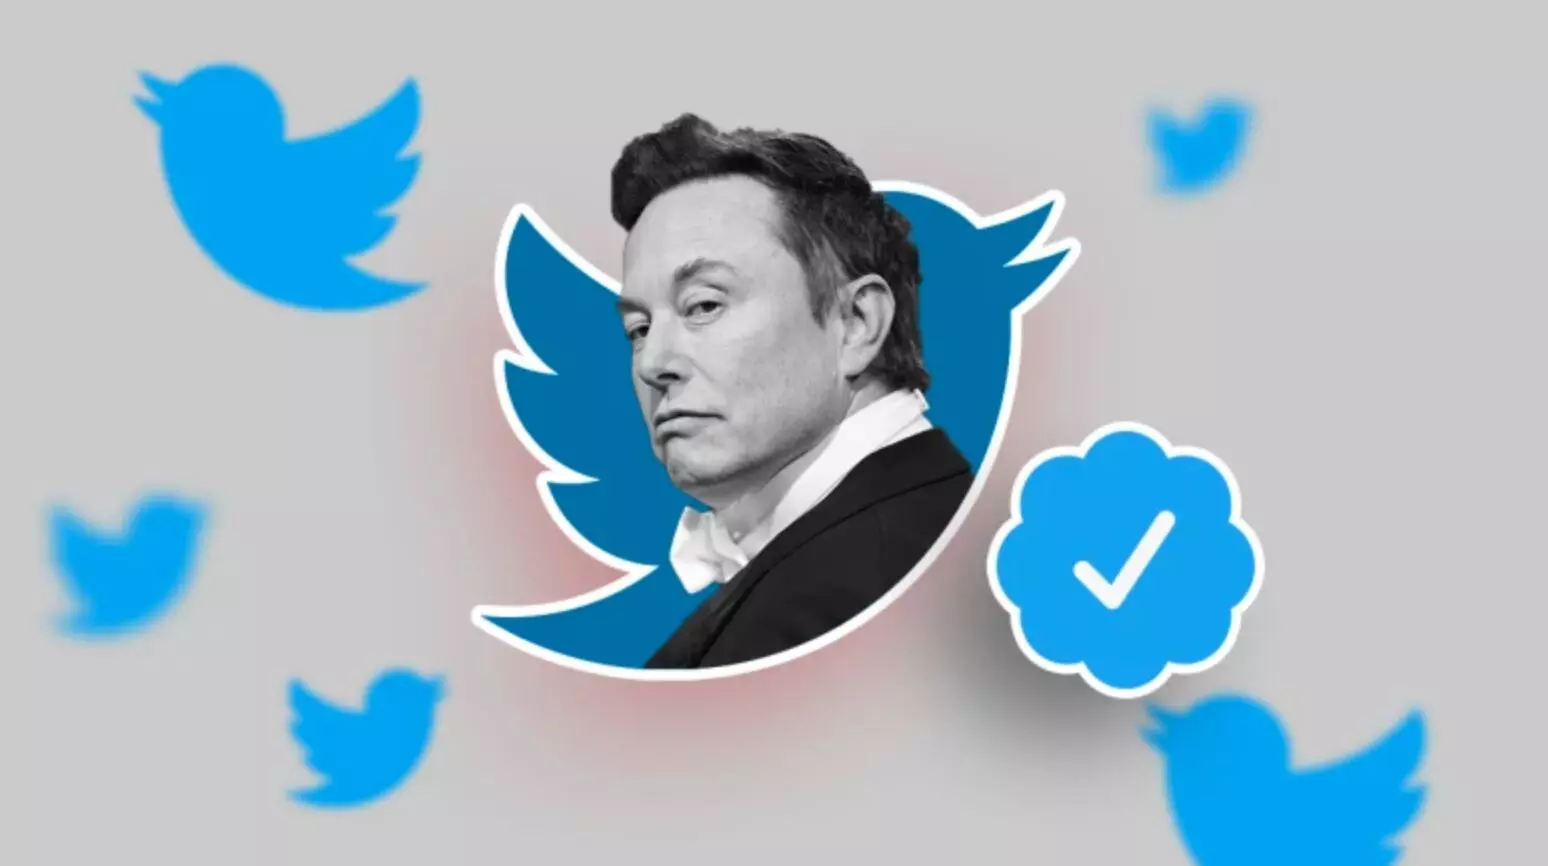 Elon Musk on Blue Tick : एलन मस्क का बड़ा फैसला, सभी फ्री वाले ब्लू टिक हटाए जाएंगे, बोले- यही भ्रष्ट हैं